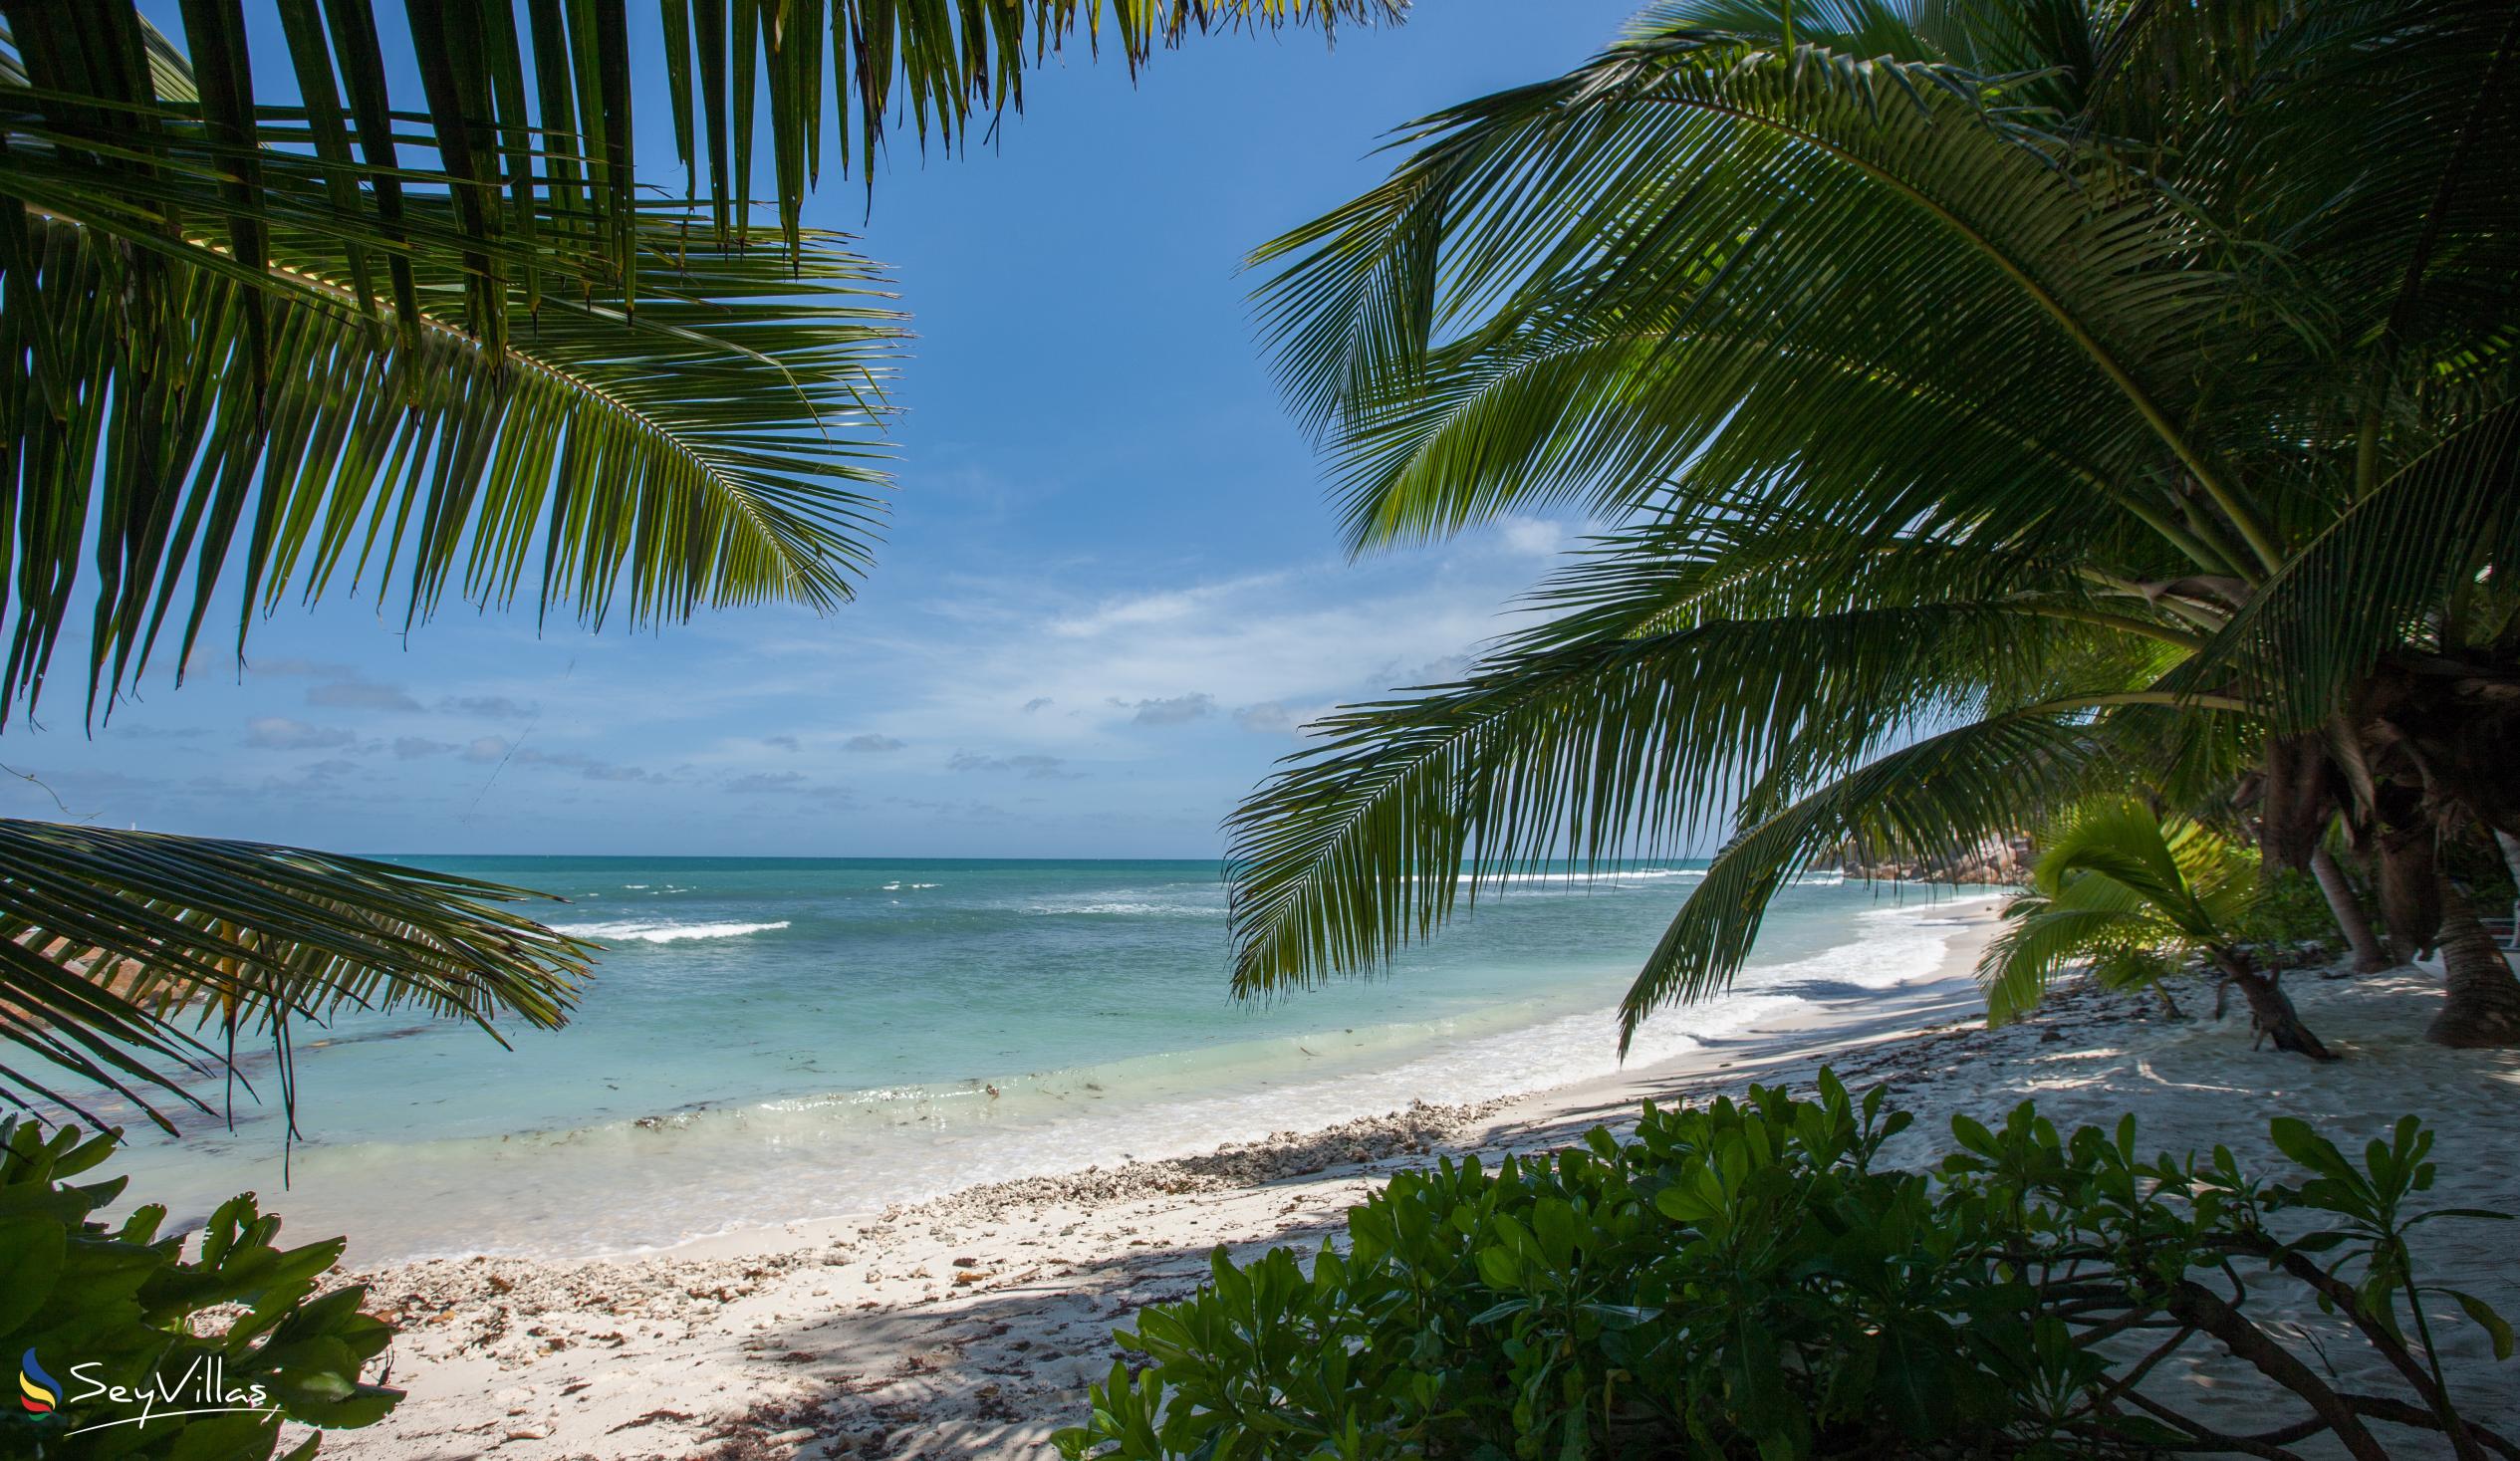 Foto 35: Le Tropique - Strände - Praslin (Seychellen)